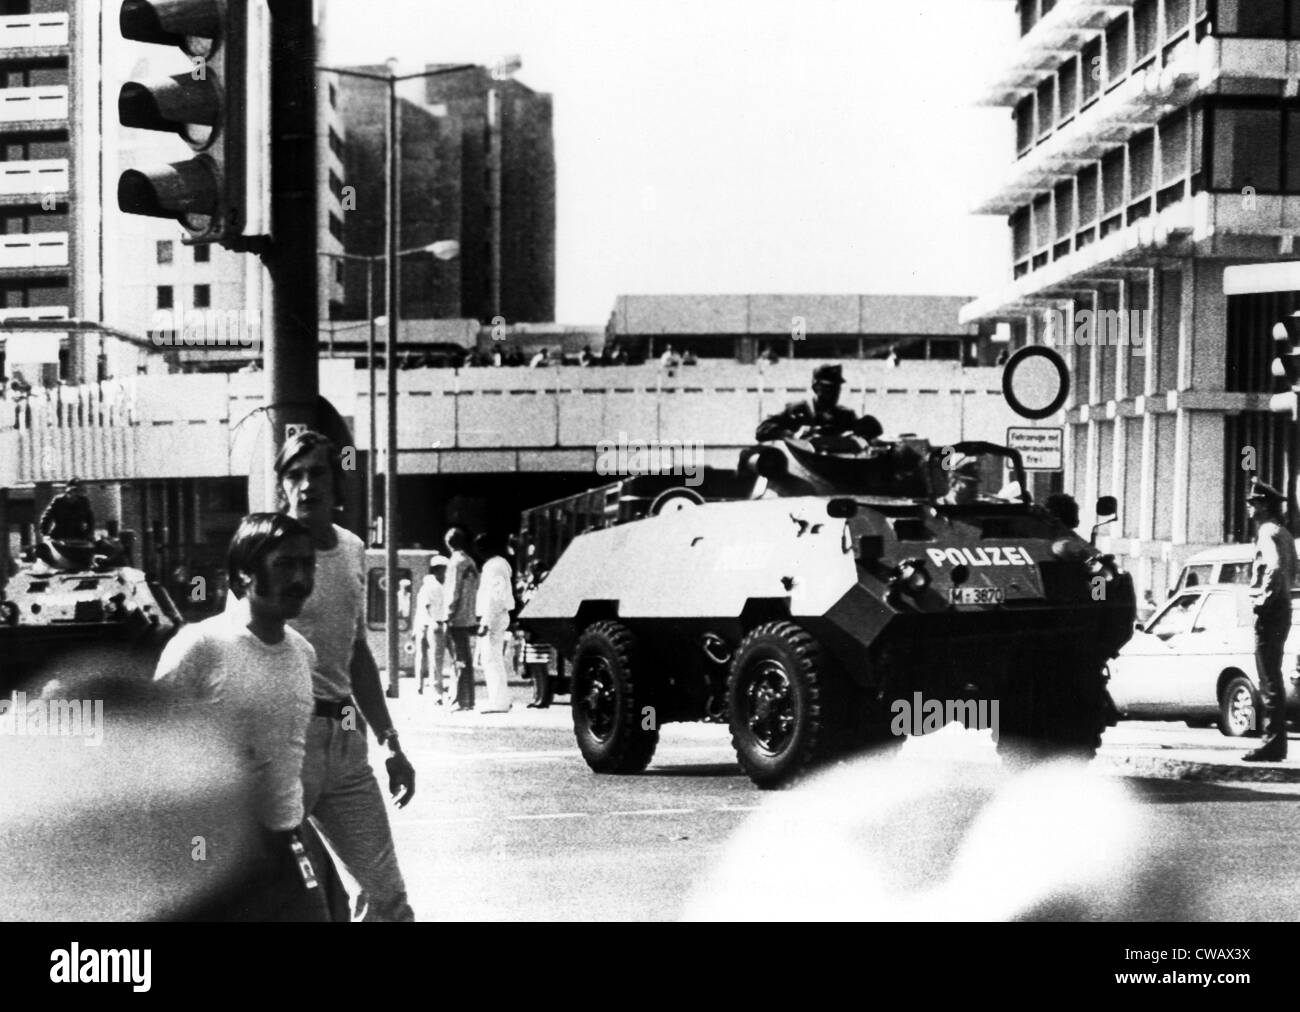 1972 Olimpiadi, tedesco-occidentale della pattuglia di polizia nel villaggio olimpico veicoli blindati, Monaco di Baviera, Germania, 09-05-1972.. La cortesia: CSU Foto Stock